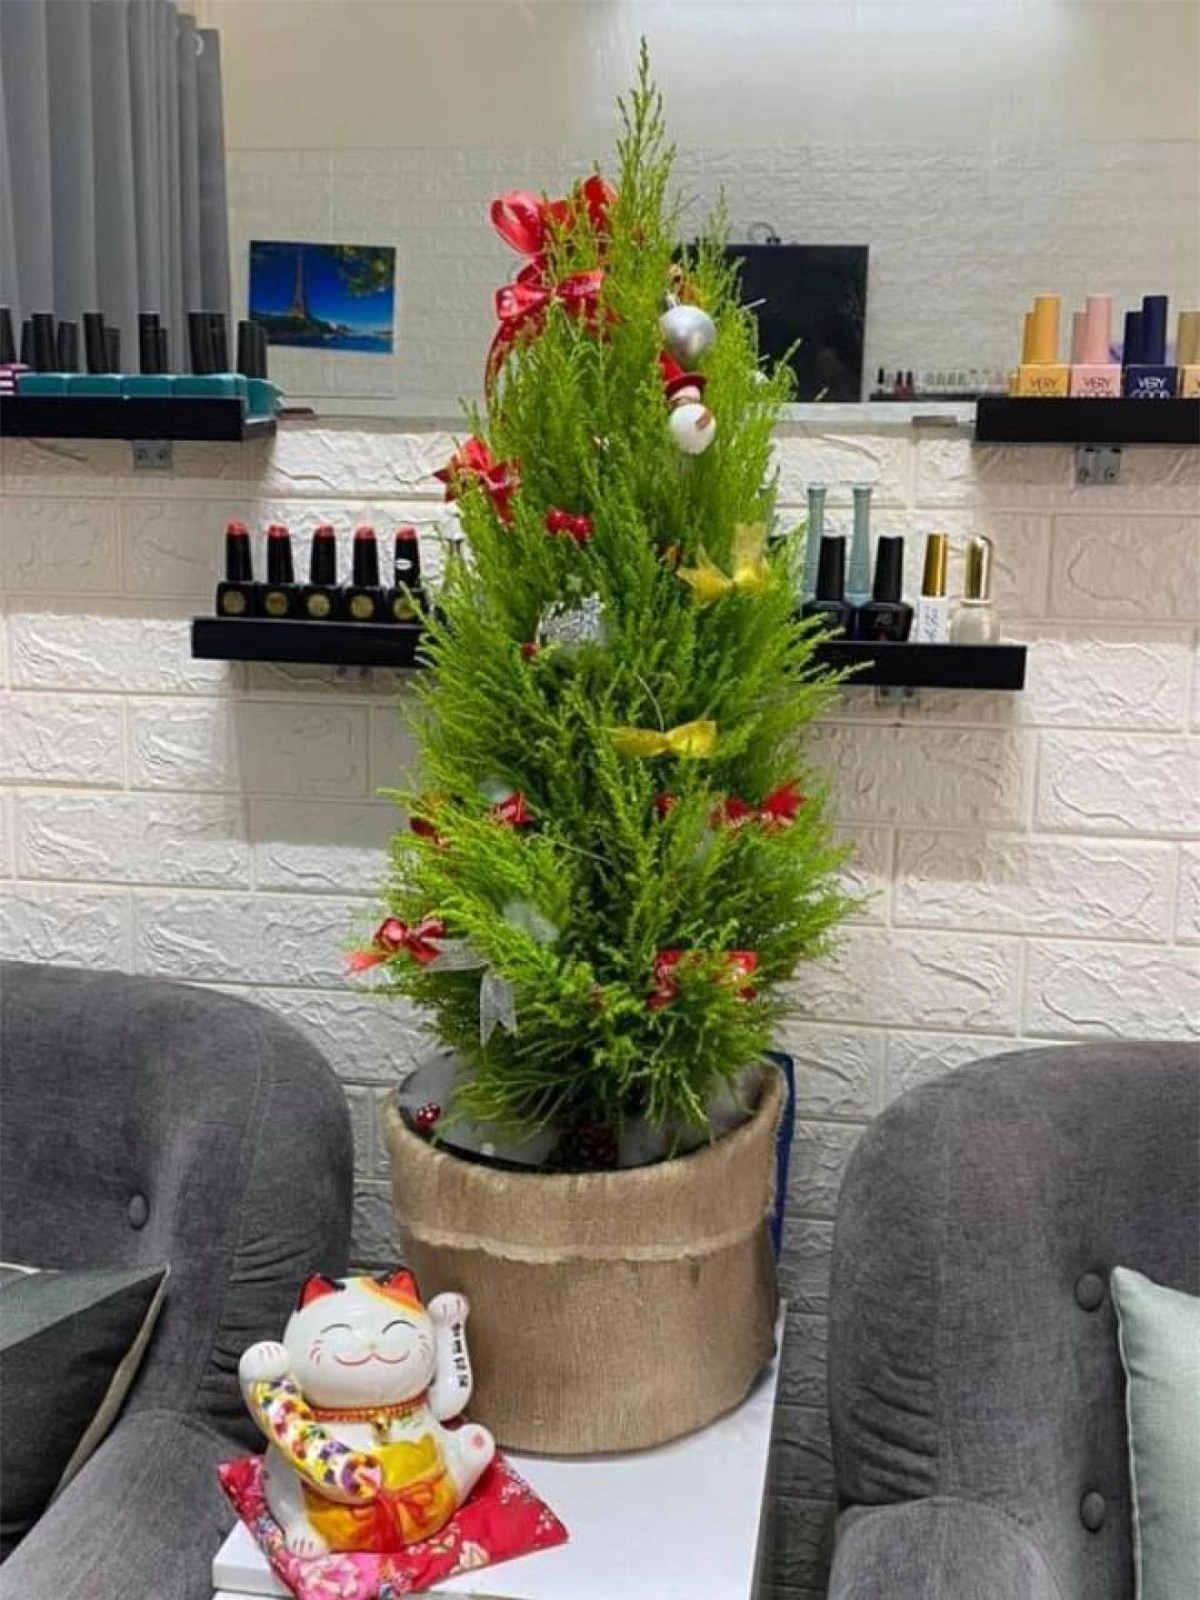 Bên cạnh cây thông tươi, năm nay, nhiều khách hàng chuyển sang dùng tùng thơm để trang trí Giáng sinh với giá "mềm" hơn rất nhiều. (Ảnh: VTC News)